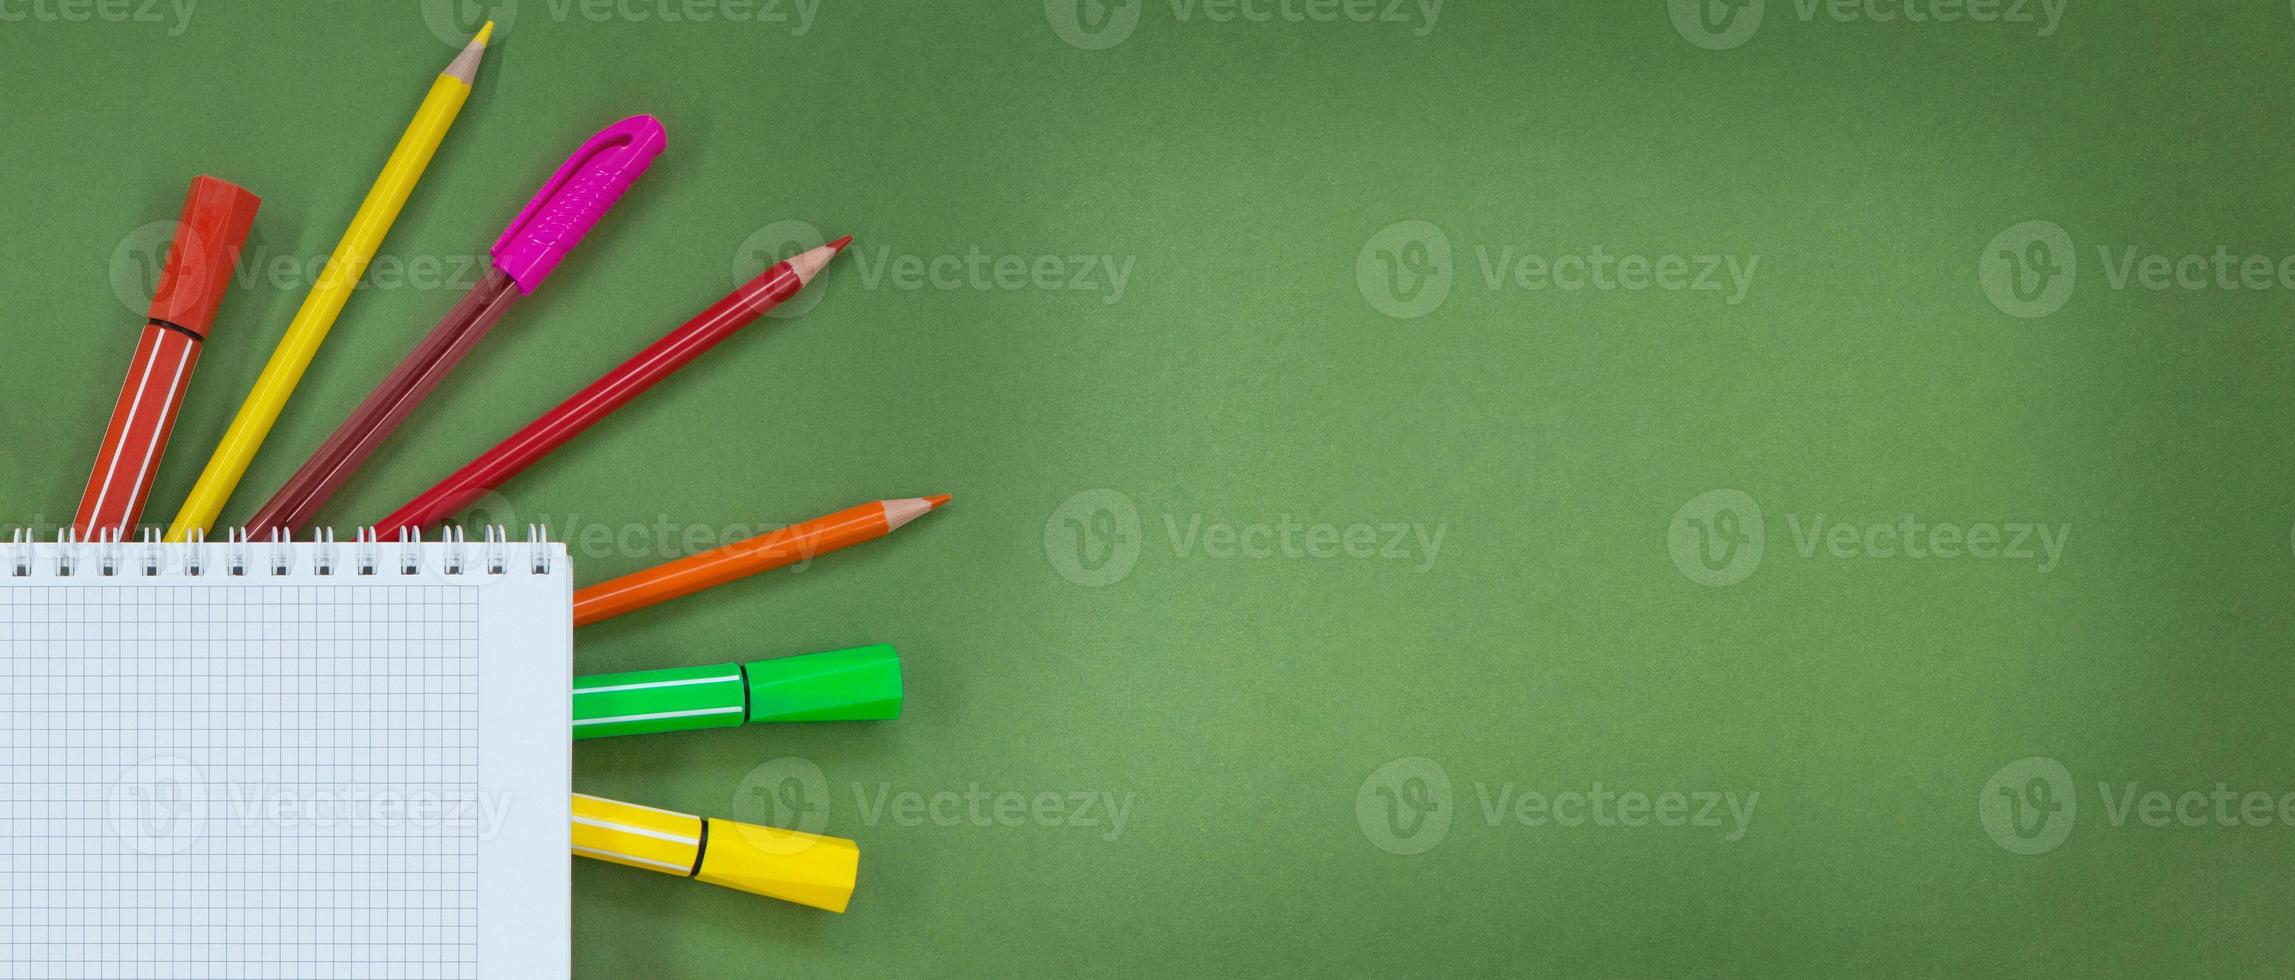 flerfärgad pennor, pennor, känt dricks pennor med anteckningsblock med cell på sida på grön bakgrund. begrepp tillbaka till skola, inlärning, teckning. kopia Plats foto